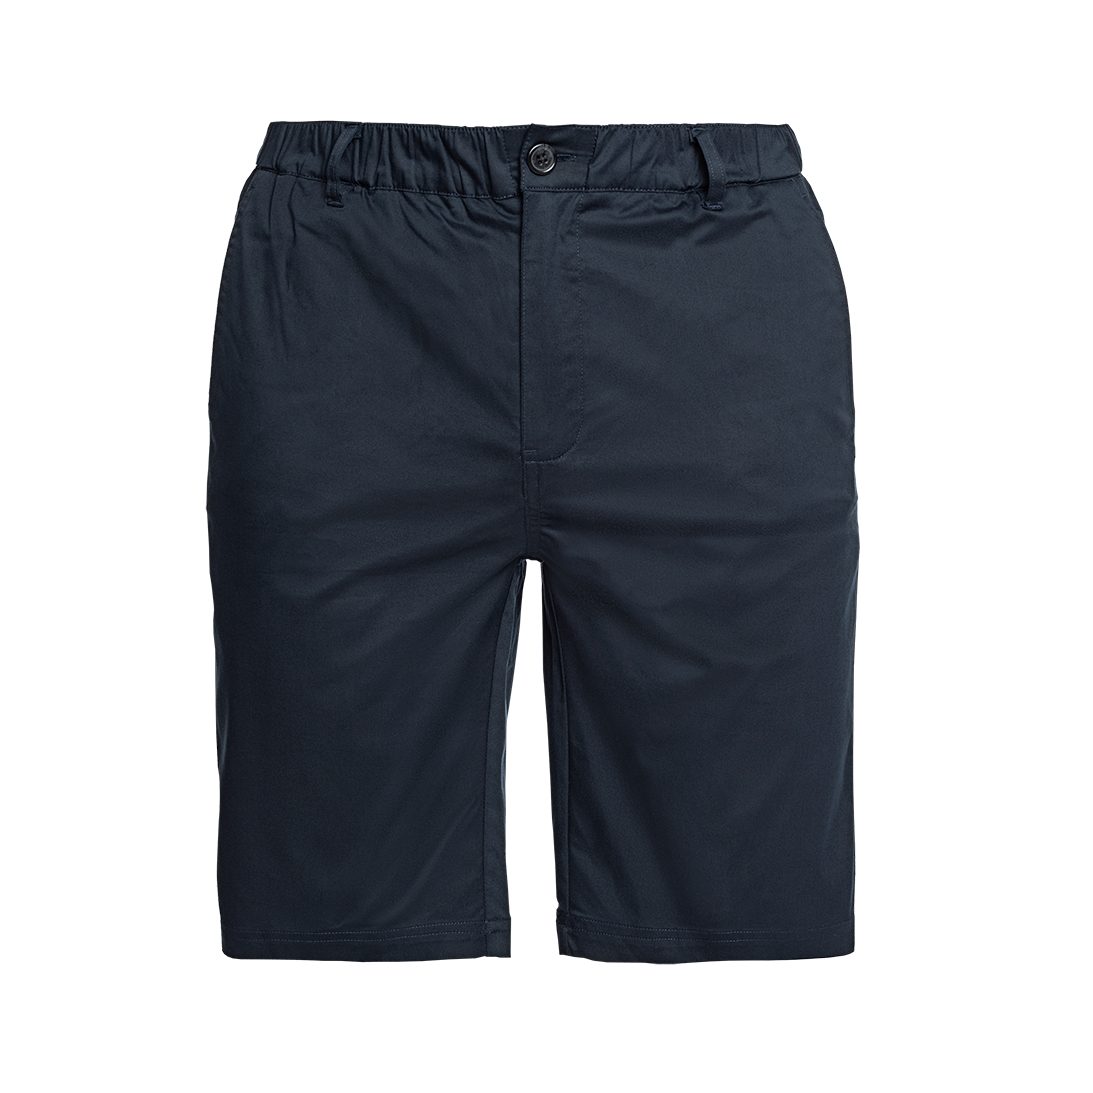 Papas Shorts Chinoshorts Kurze knielange Shorts - Sommer Shorts mit bequemem, elastischem Bund und 6 Taschen, davon 2 versteckten, sicheren Reißverschlusstaschen für Wertgegenstände dunkelblau